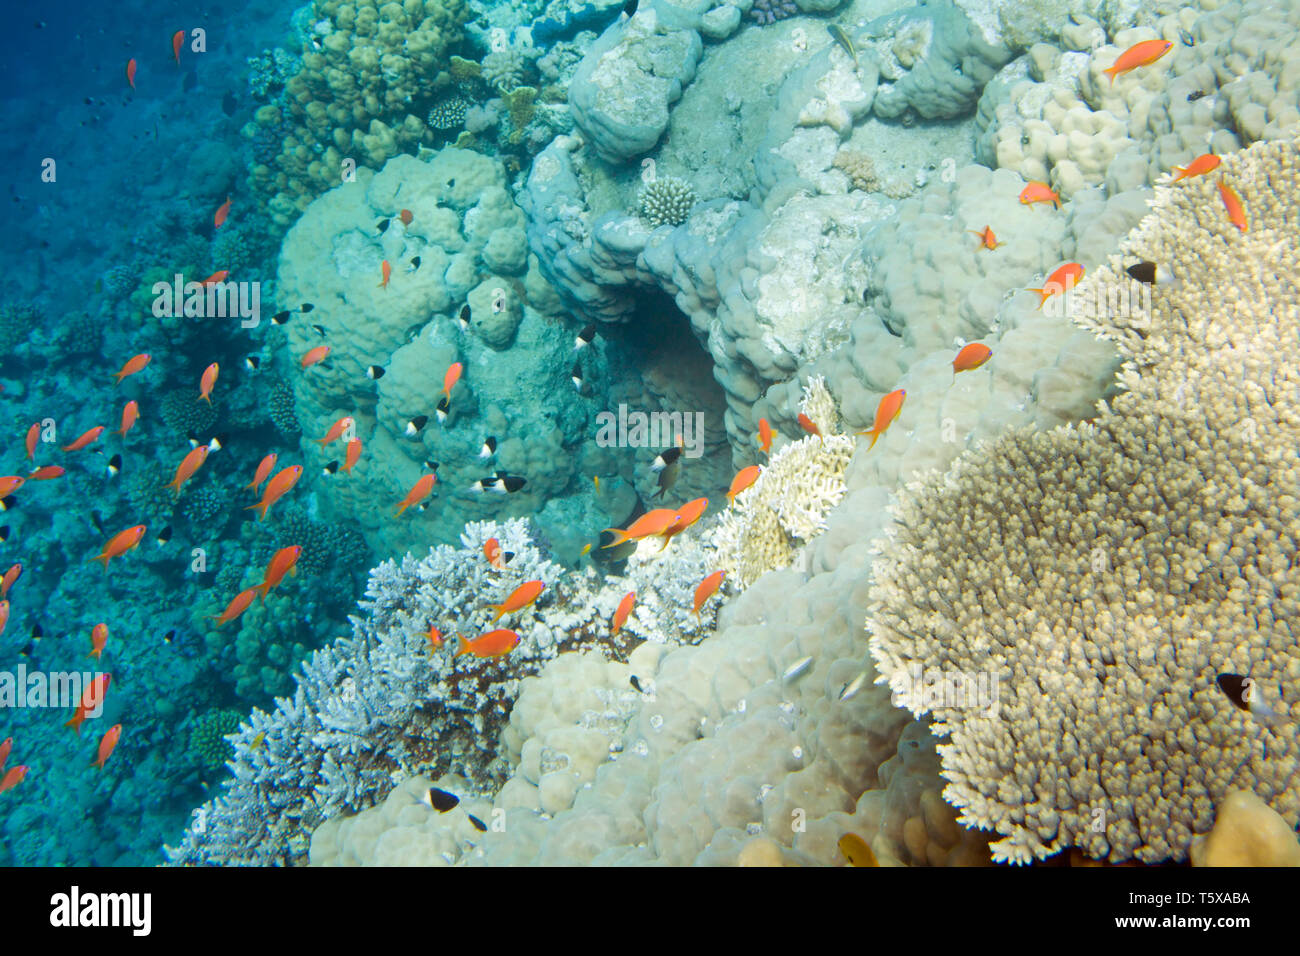 La vita subacquea del Mar Rosso in Egitto. I pesci di acqua salata e la barriera corallina. In una caverna nel mare profondo Foto Stock